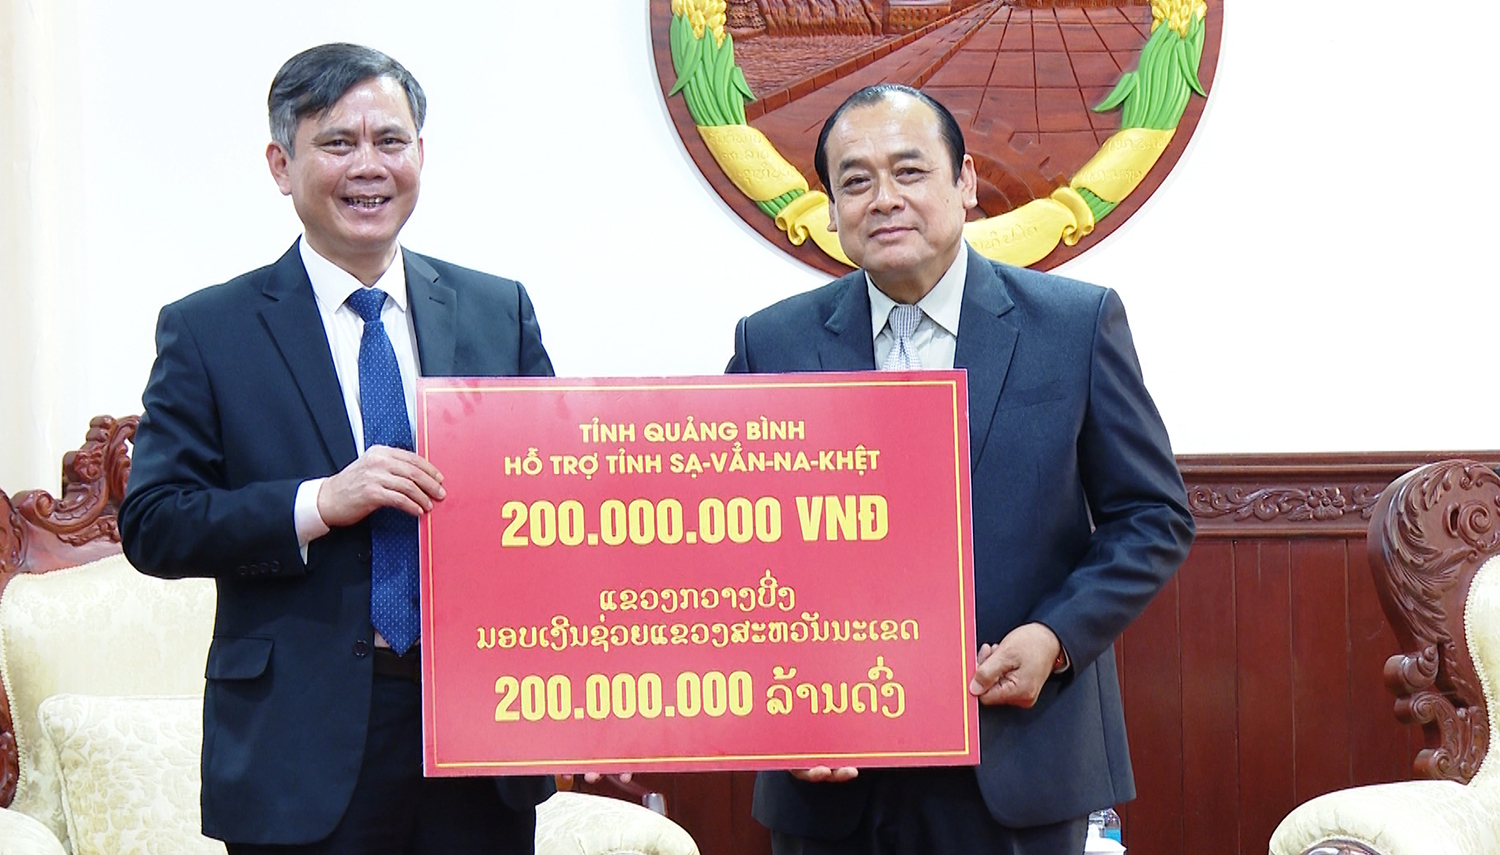 Đồng chí Trần Thắng, Chủ tịch UBND tỉnh Quảng Bình đã trao tặng 200 triệu đồng cho chính quyền và nhân dân các bộ tộc Lào tỉnh Savannakhet